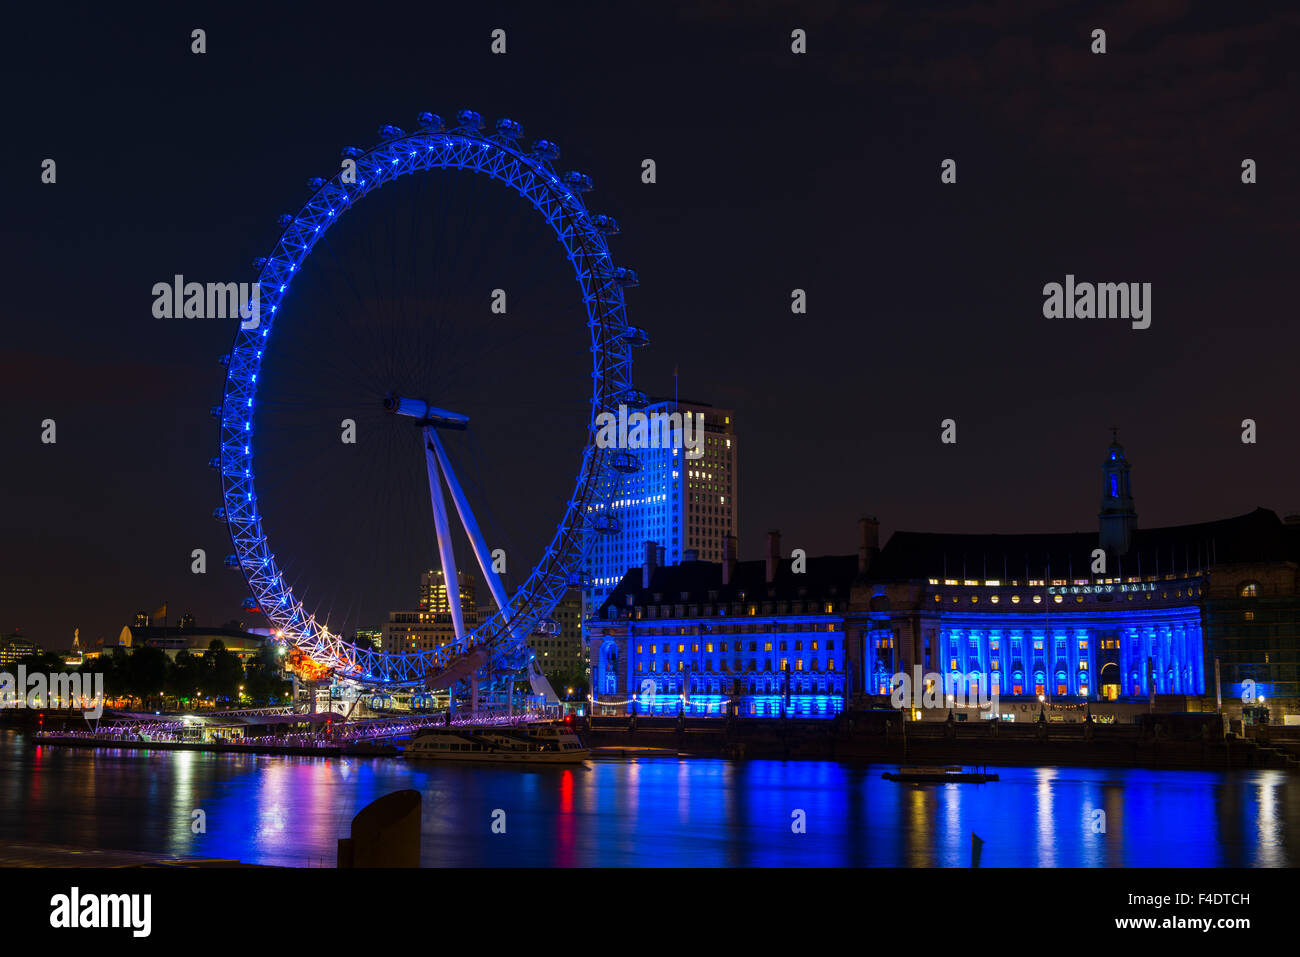 Inglaterra, Londres. La Eye Ferris en la noche reflejándose en el río Támesis. El crédito como: Dennis Kirkland Jaynes DanitaDelimont.com / Galería / Gran formato (tamaños disponibles) Foto de stock